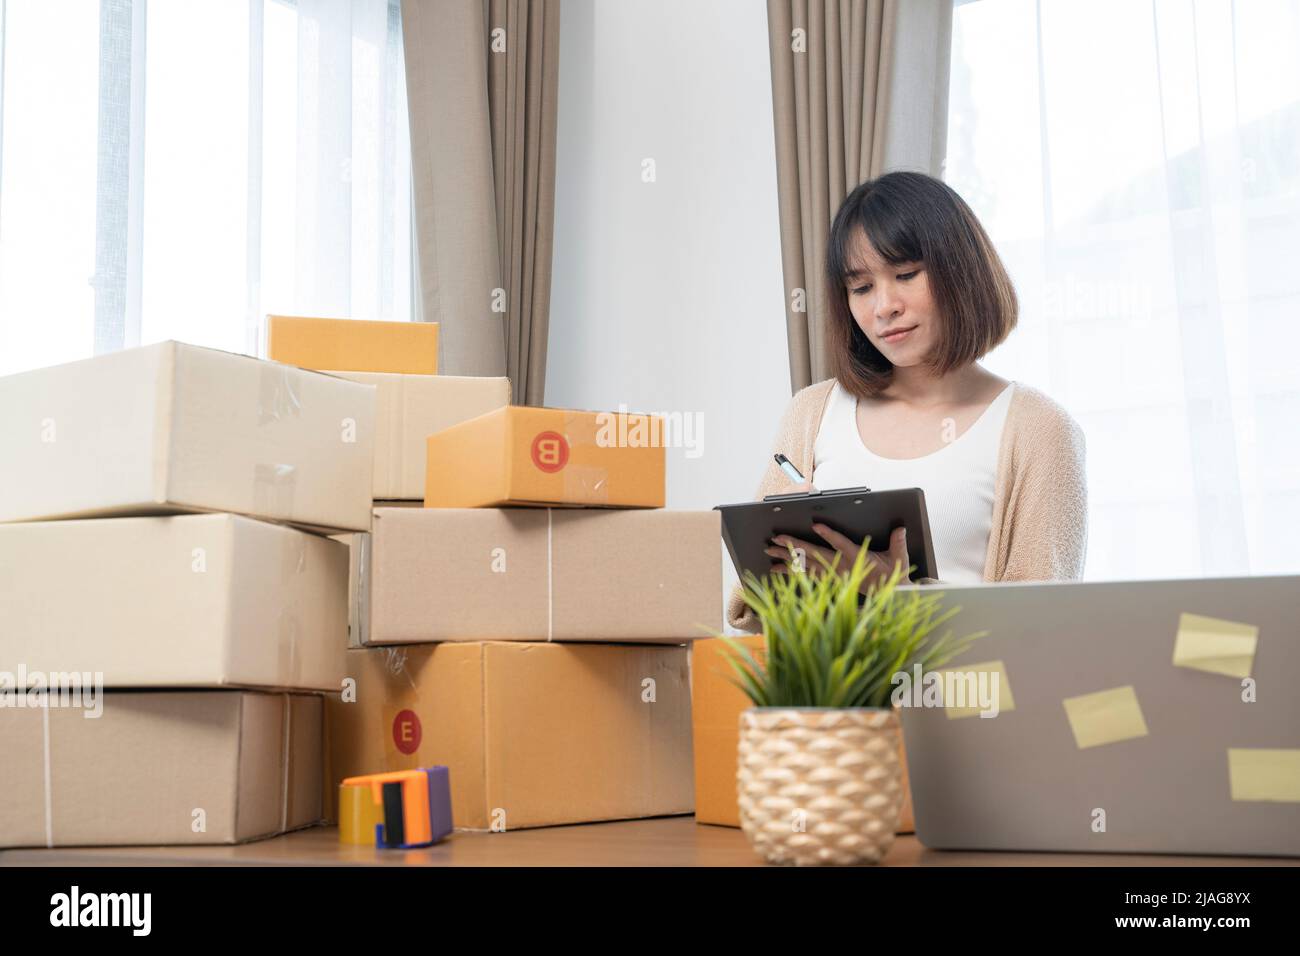 Asiatische Frauen zählen Boxen vor dem Versand an Kunden, arbeiten von zu Hause aus, Kleinunternehmer oder Kleinunternehmer gerade erst anfangen worki Stockfoto